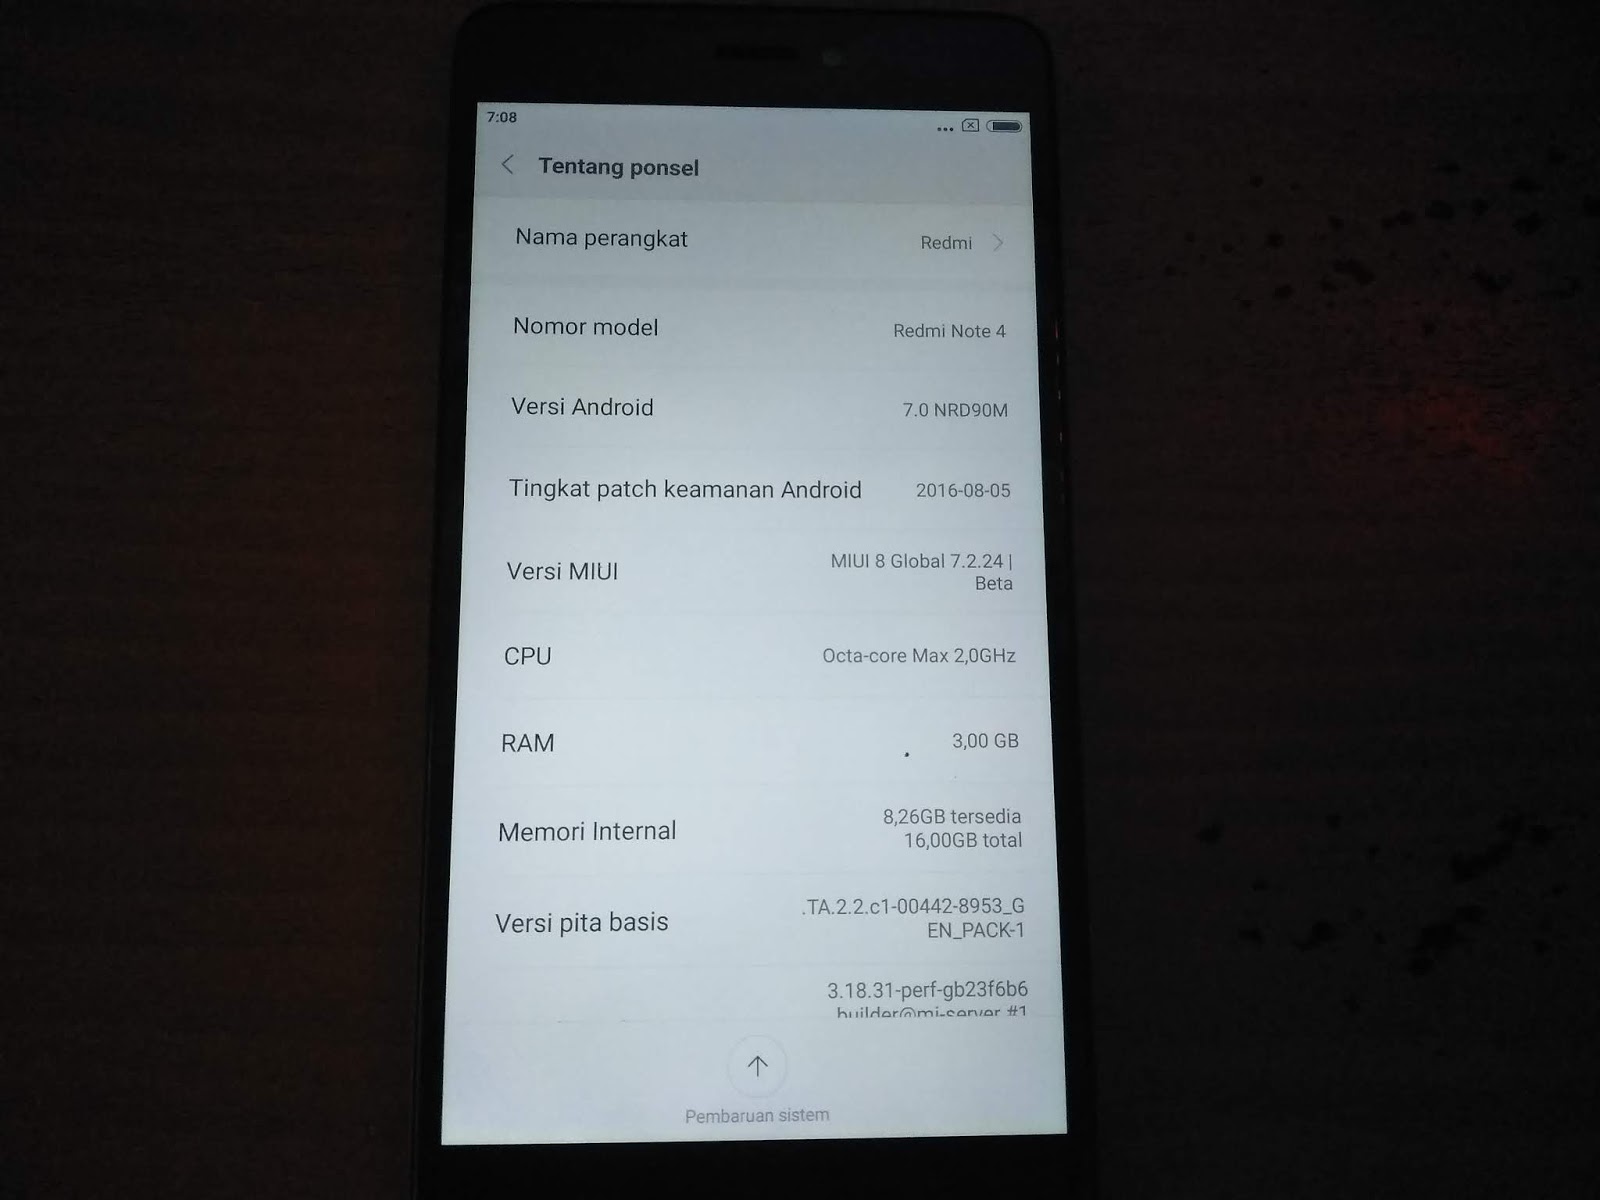 Redmi Note 8 Mi Account Unlock